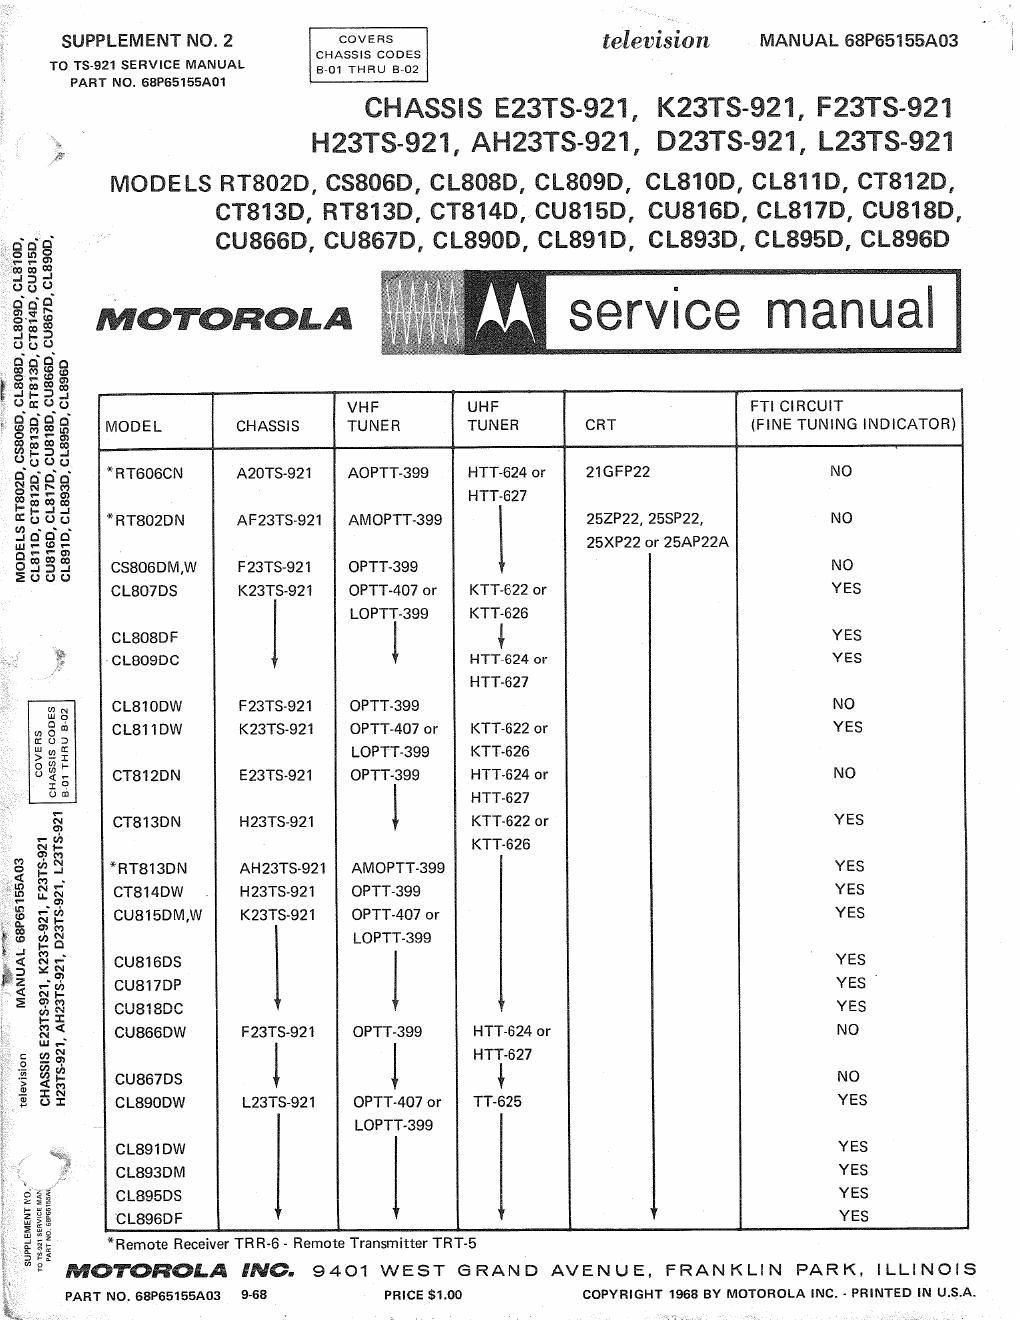 motorola cu 867 d service manual